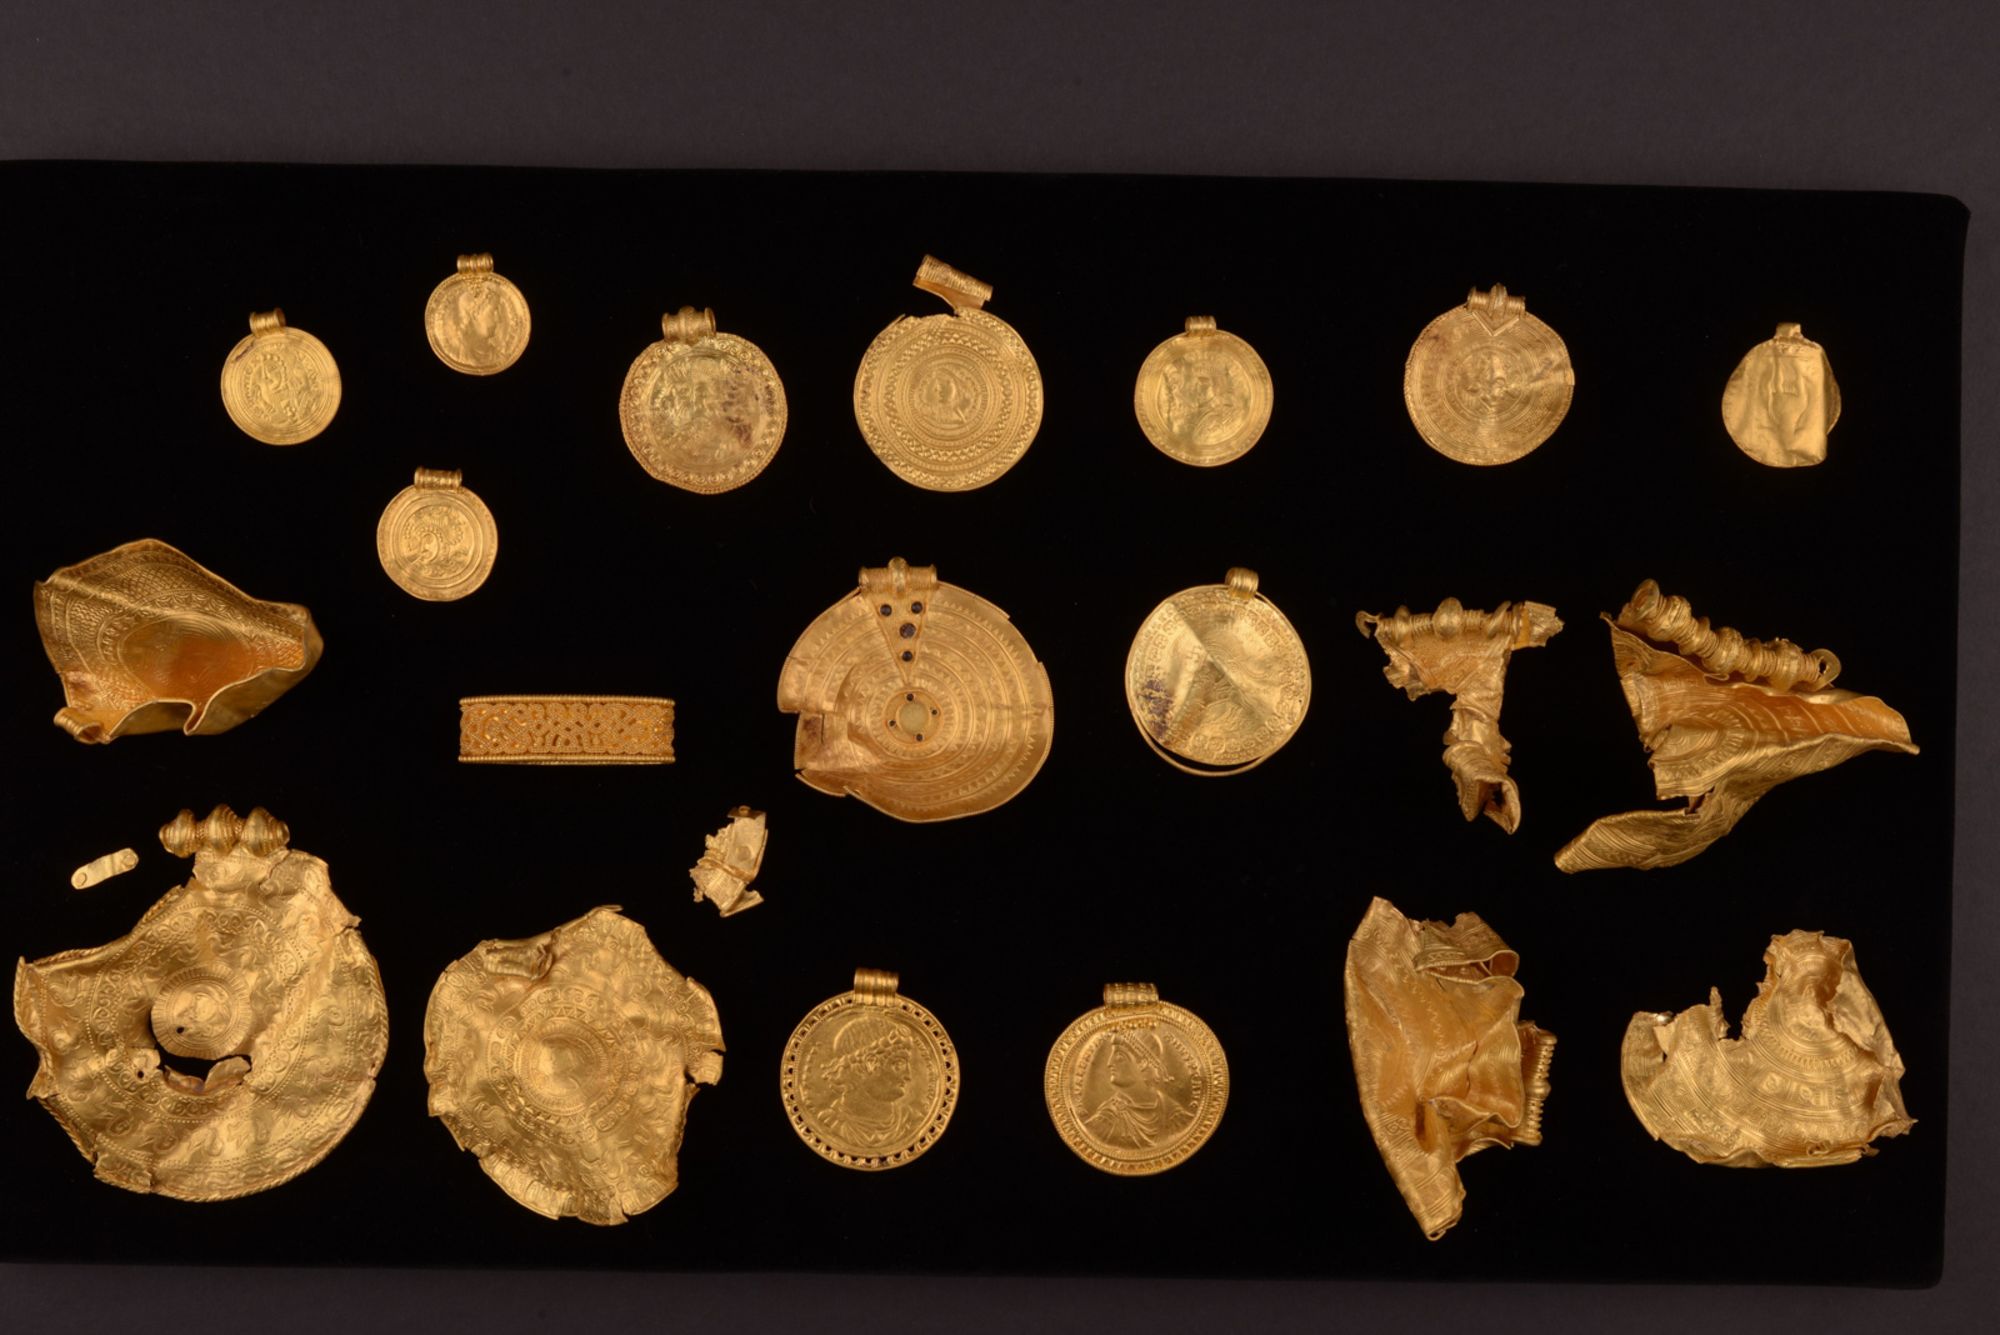 03 Vindelev gold hoard discovery